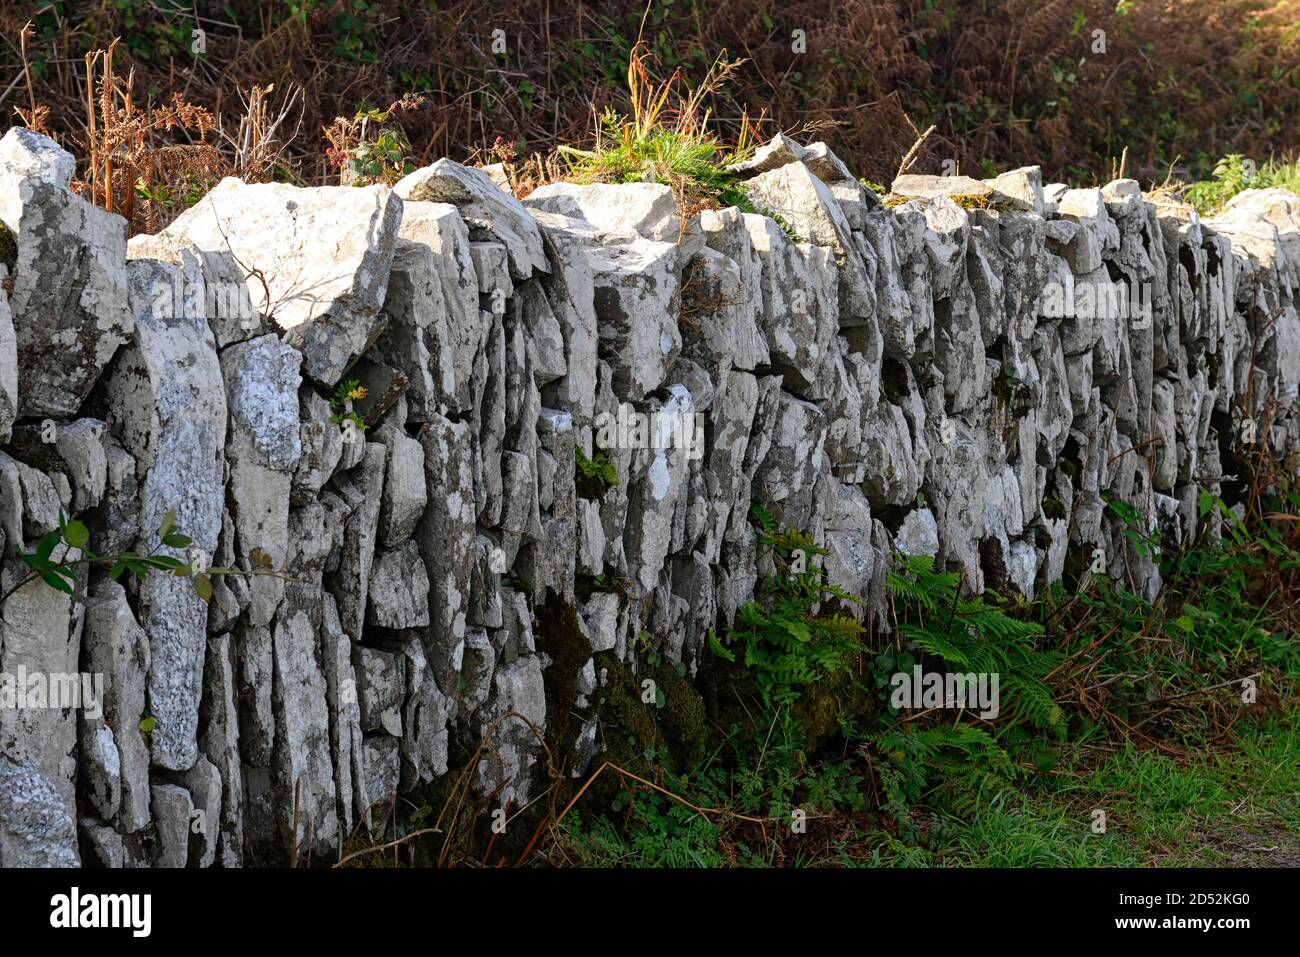 Pared de piedra seca tradicional, apilada verticalmente, tejida, tejida, liquen, líquenes, musgos, corcho del oeste, irlanda rural, Rm Irlanda Foto de stock